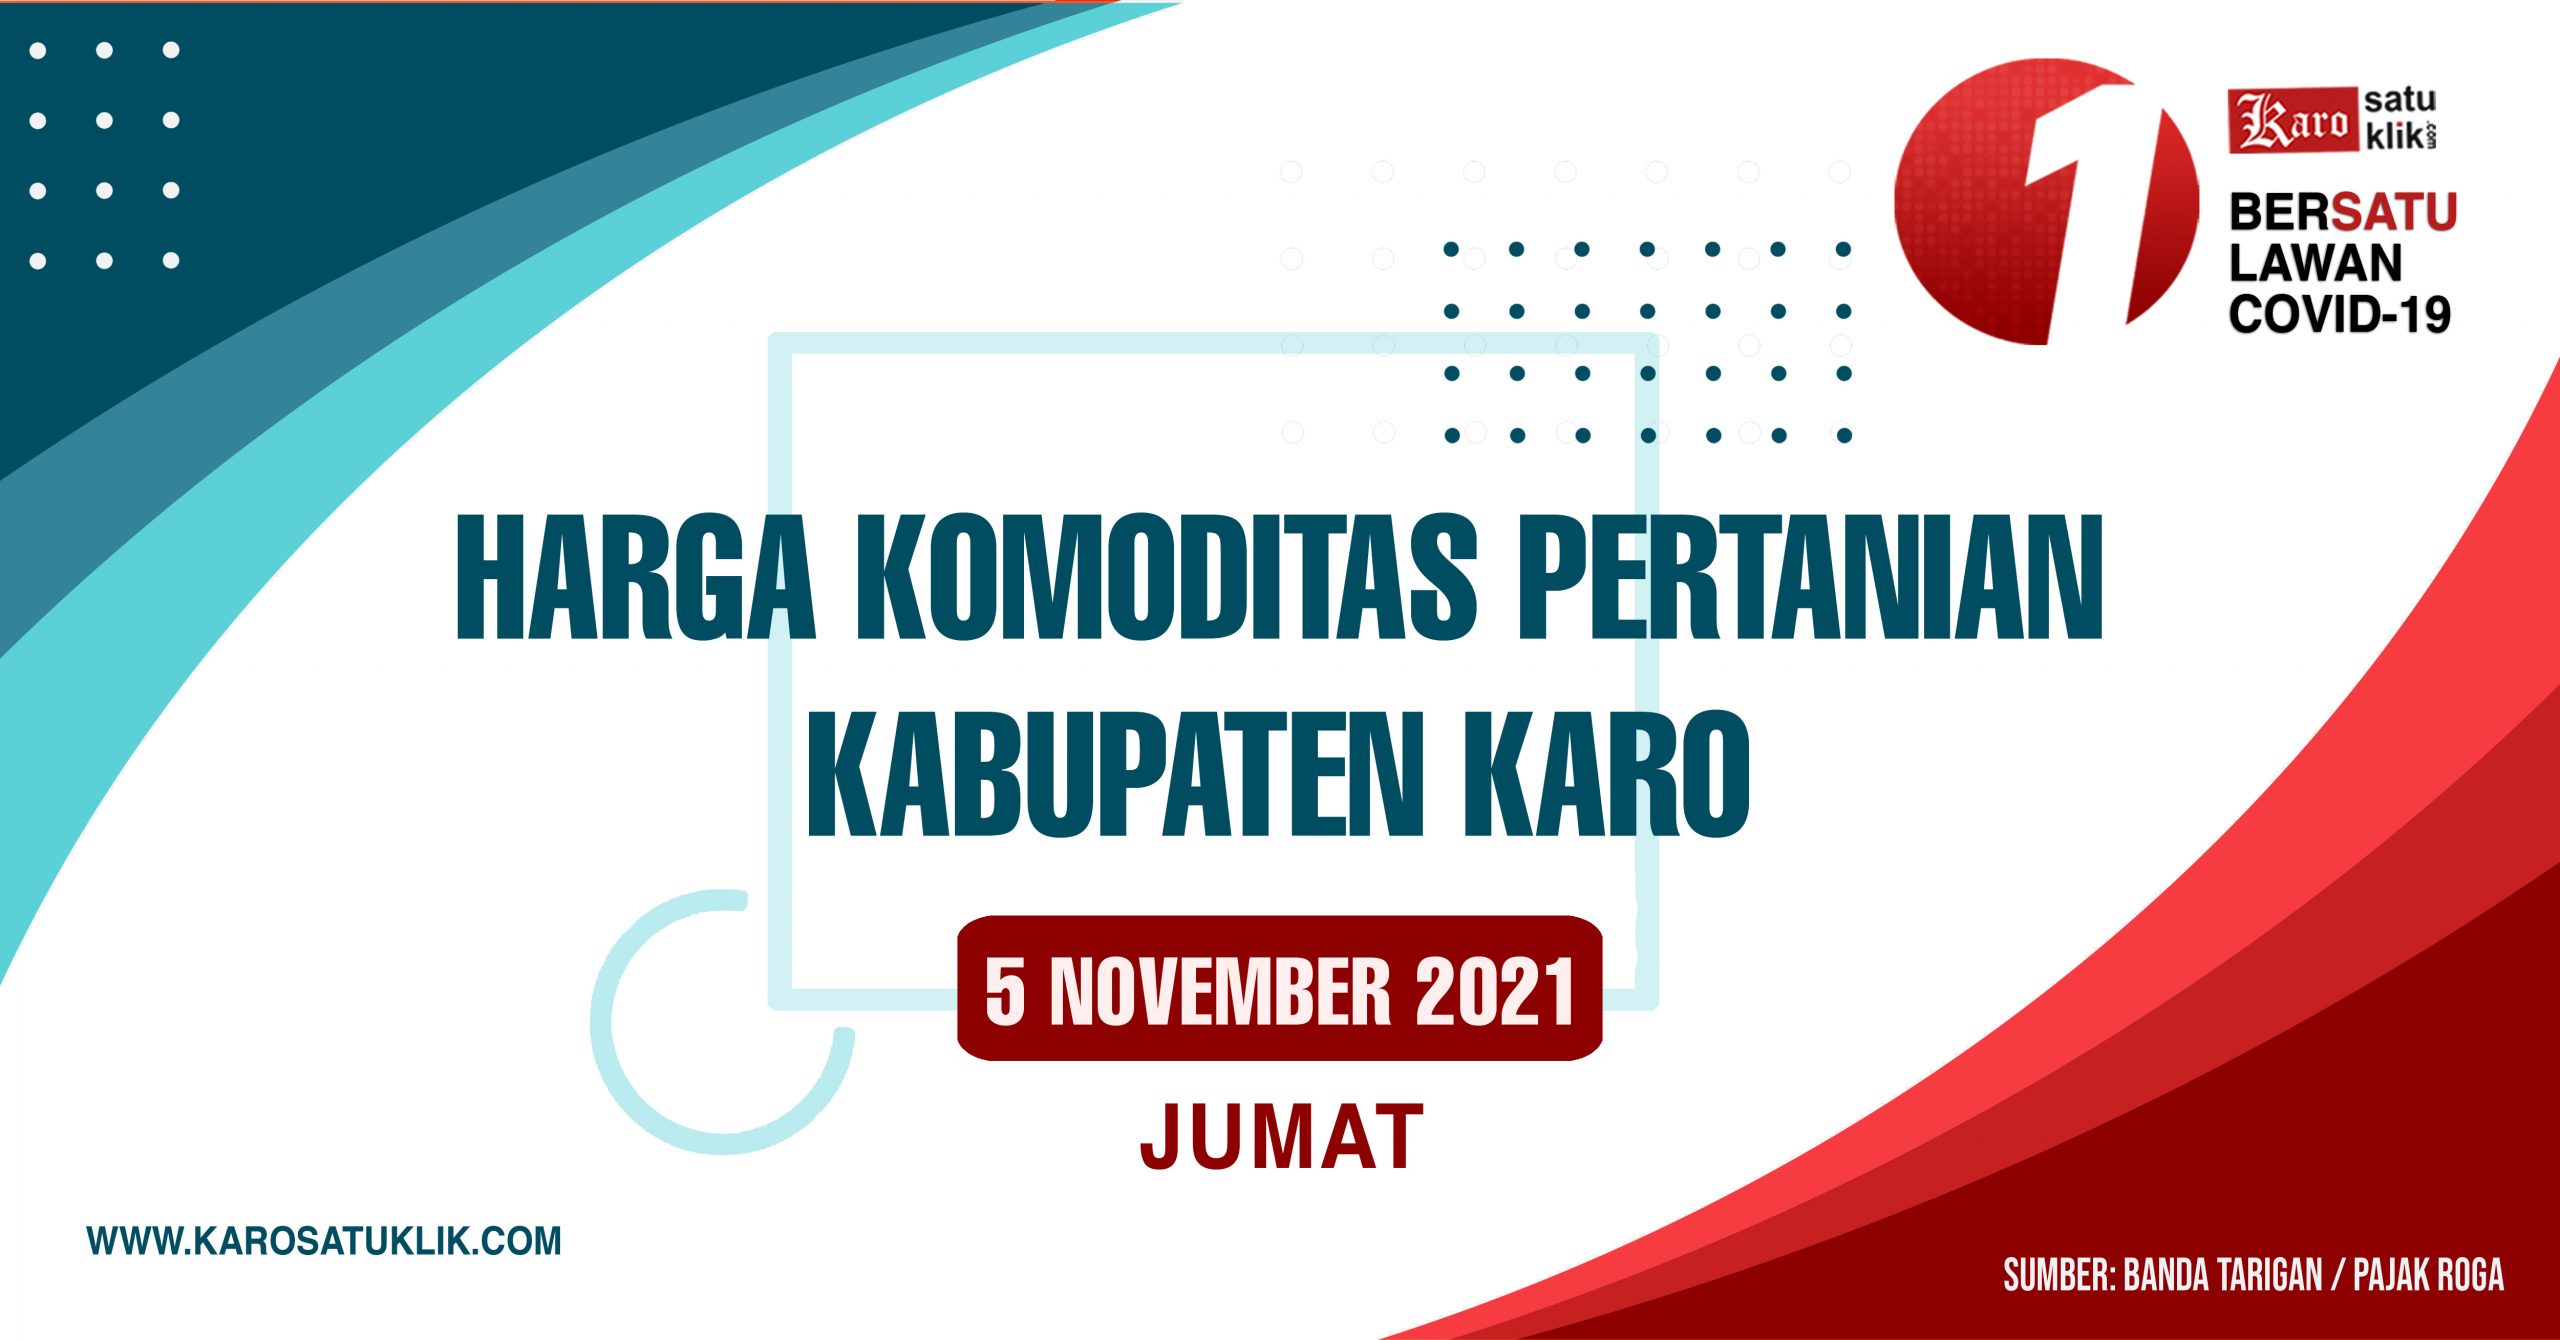 Daftar Harga Komoditas Pertanian Kabupaten Karo, 5 November 2021